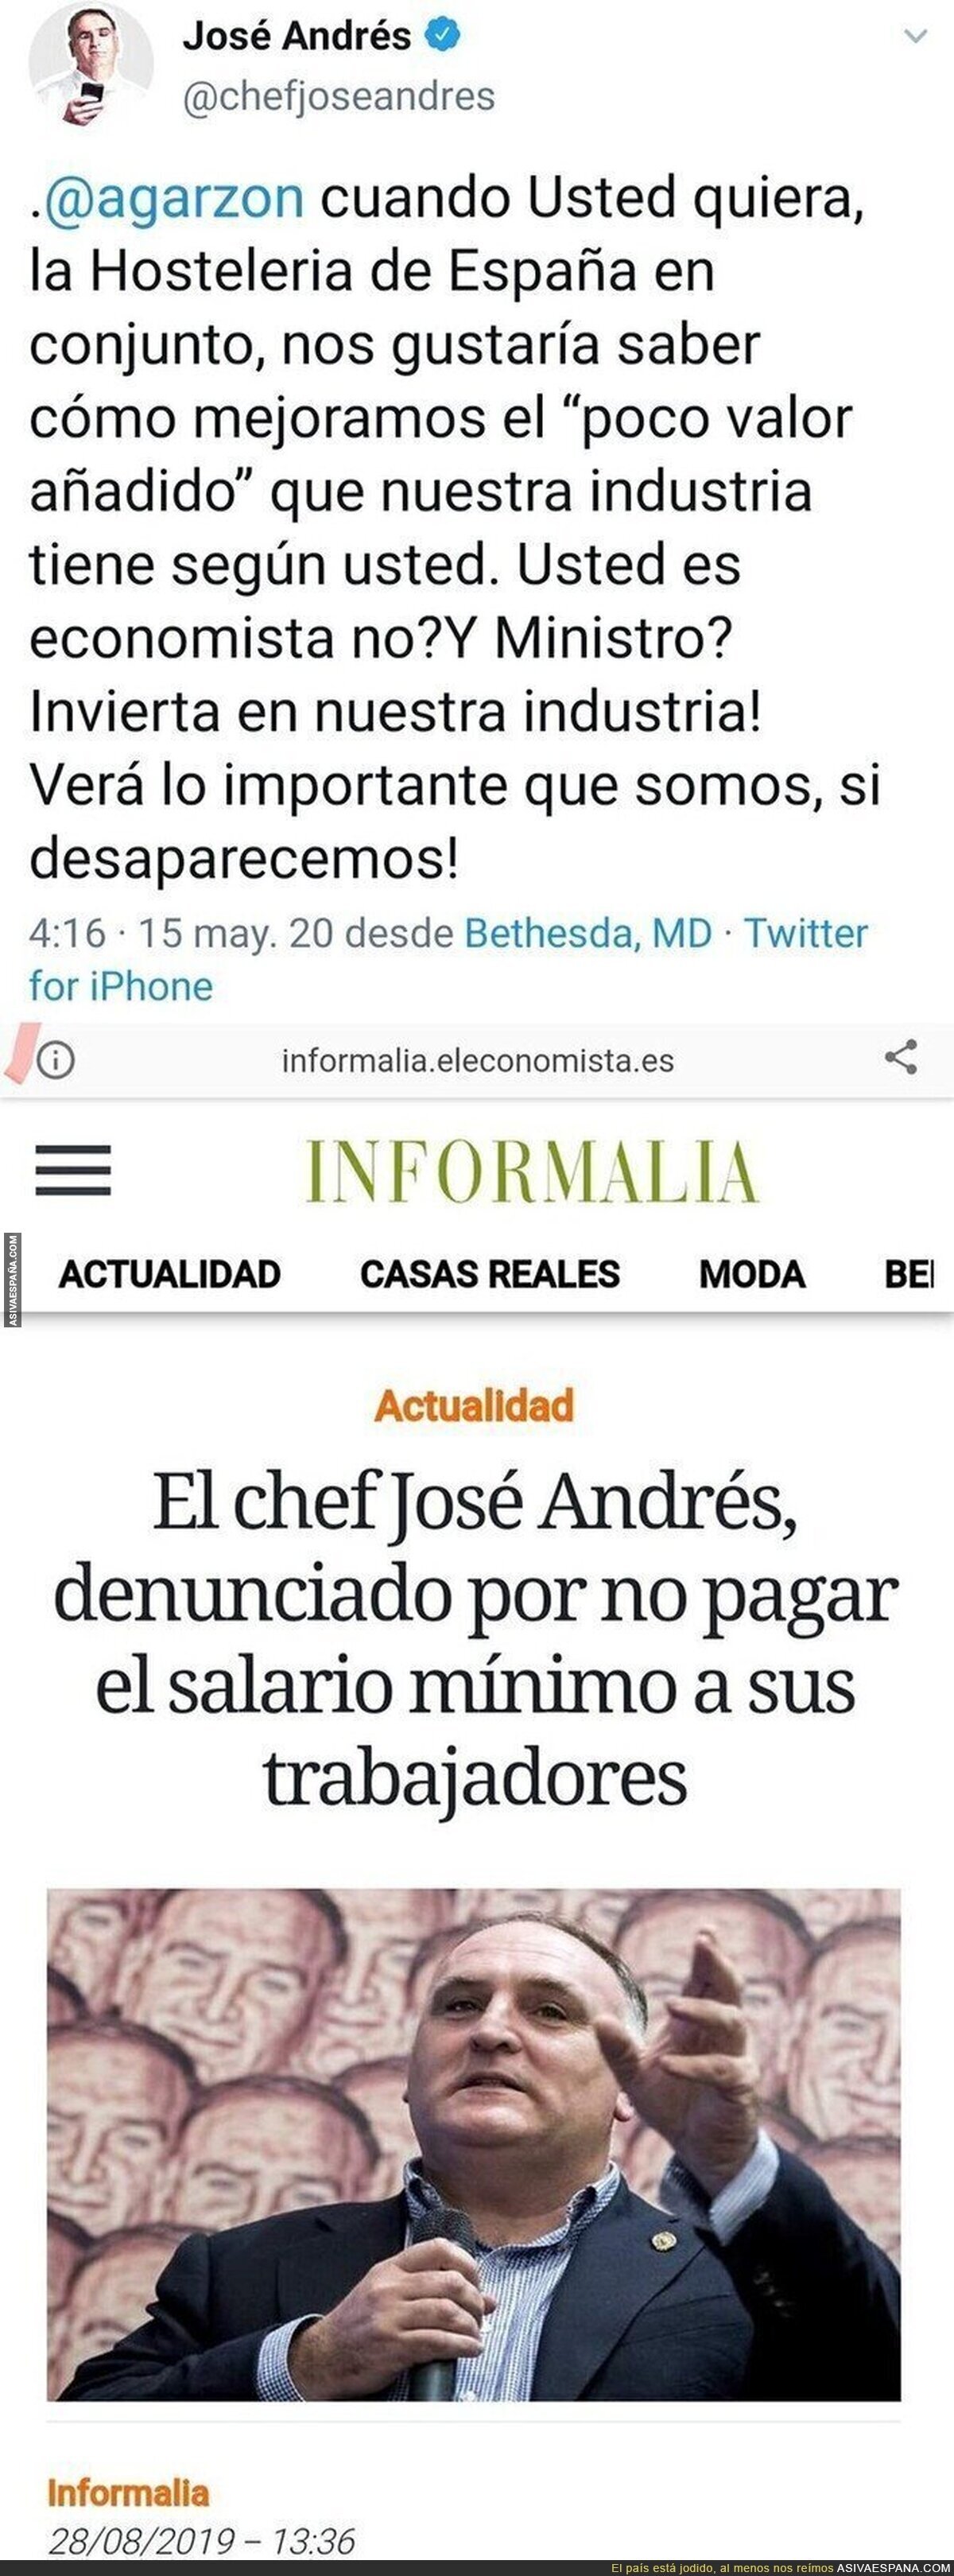 El chef José Andrés carga contra Alberto Garzón por su gestión en el Gobierno y le responden con una noticia que le deja retratado por completo